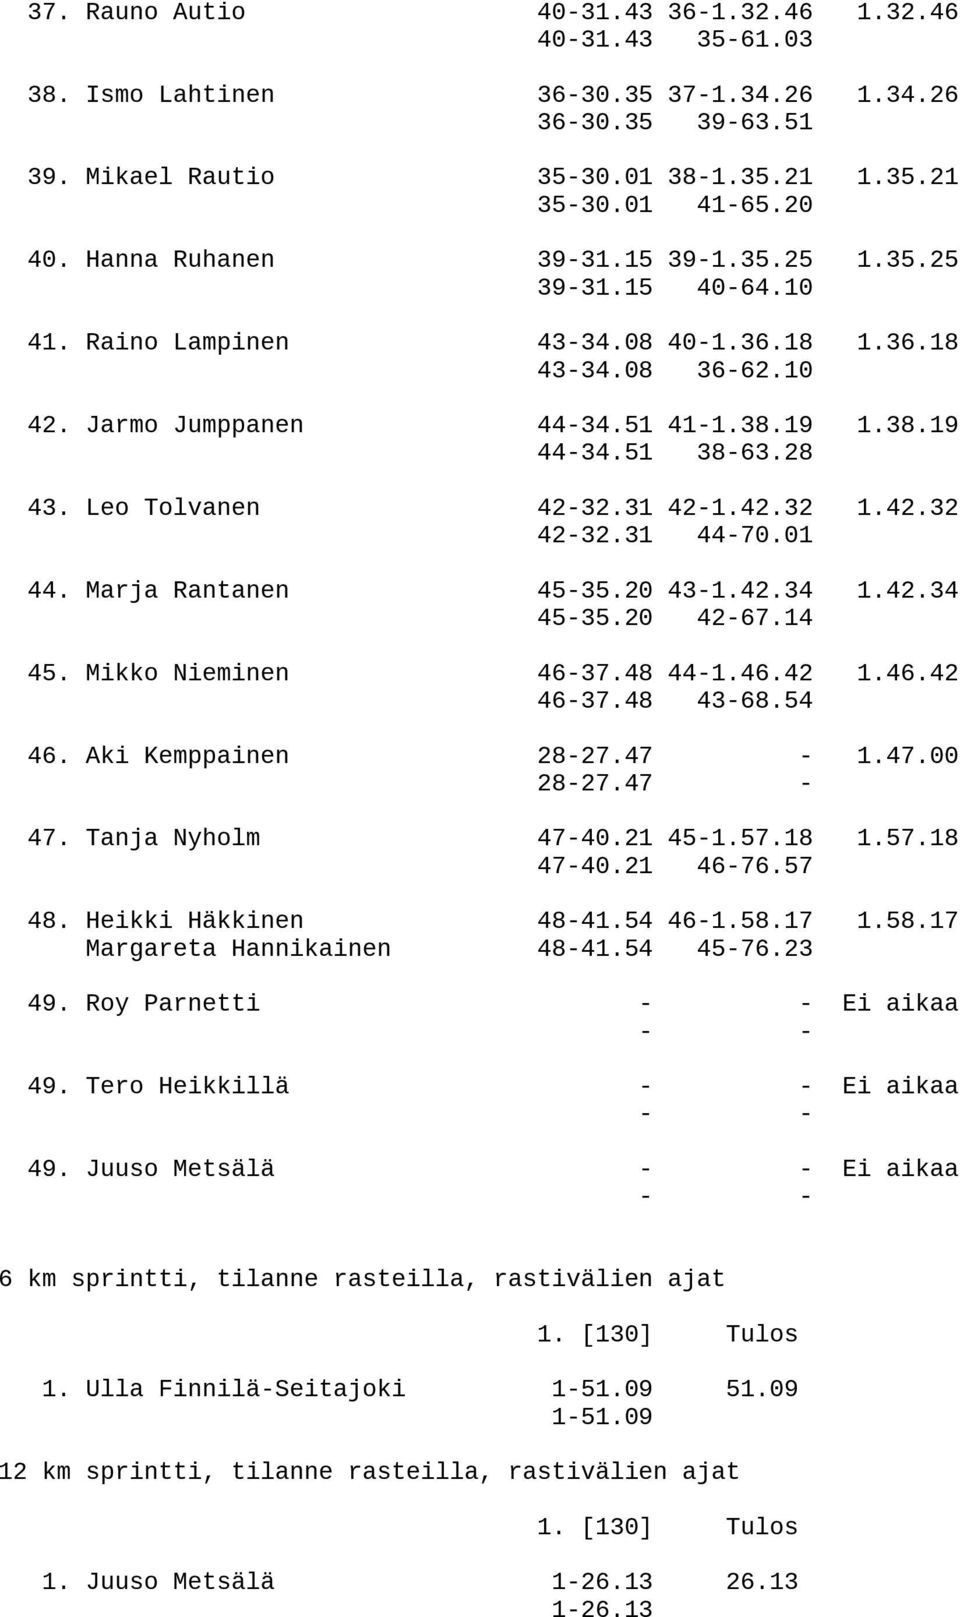 Leo Tolvanen 42-32.31 42-1.42.32 1.42.32 42-32.31 44-70.01 44. Marja Rantanen 45-35.20 43-1.42.34 1.42.34 45-35.20 42-67.14 45. Mikko Nieminen 46-37.48 44-1.46.42 1.46.42 46-37.48 43-68.54 46.